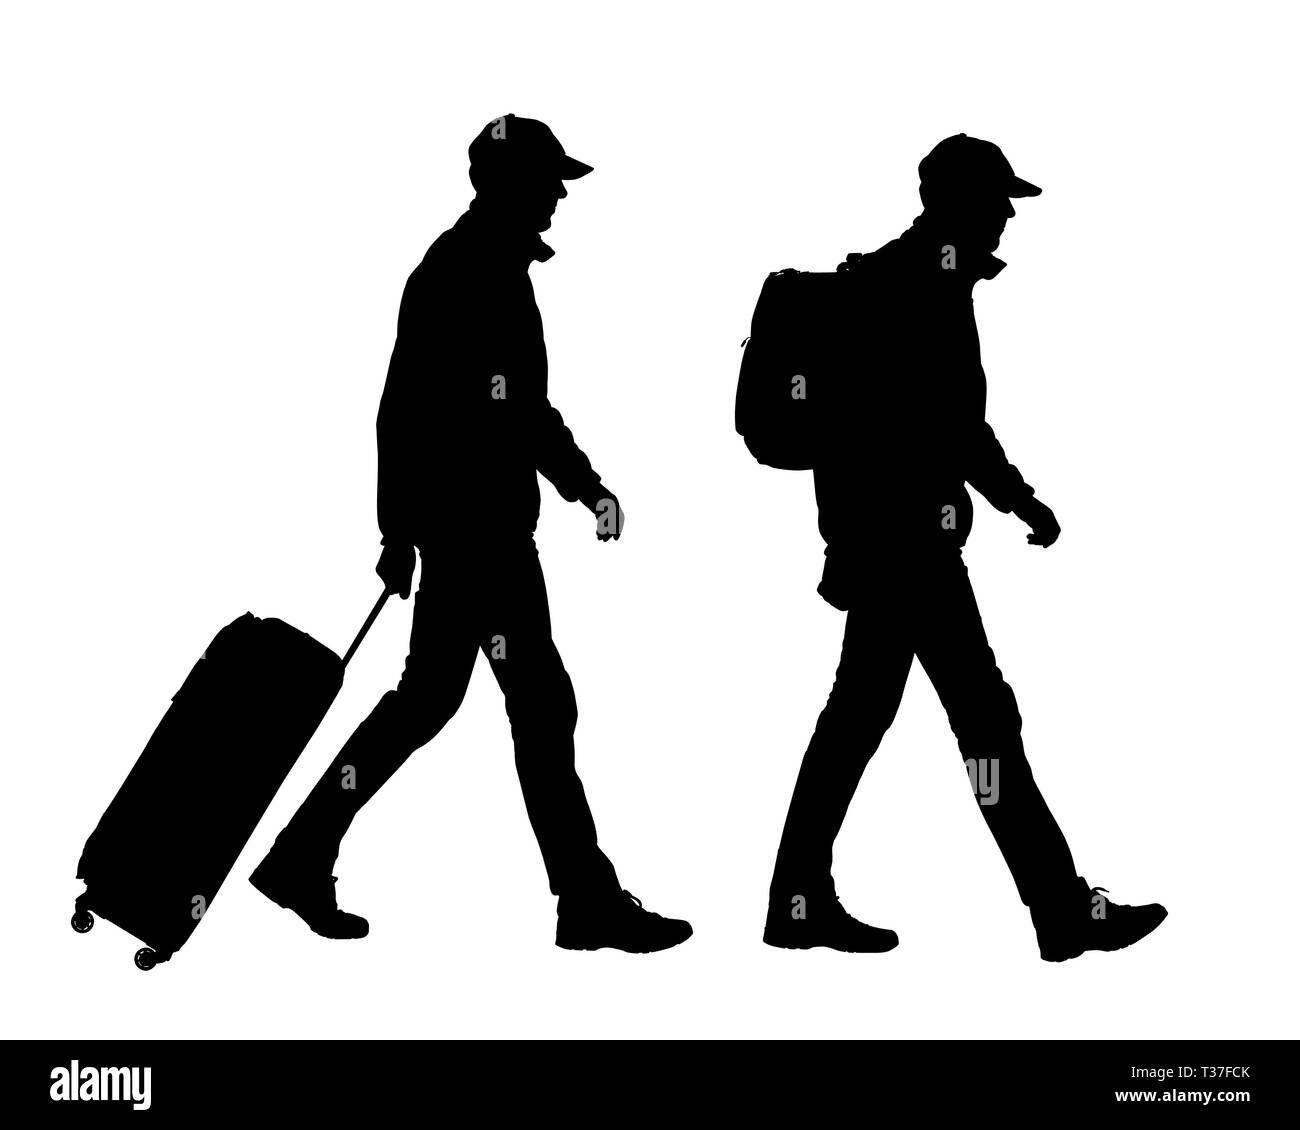 Silhouette realistico di uomo a piedi turistico con zaino e valigia. Il cappuccio sulla testa. Isolato su sfondo bianco - vettore Illustrazione Vettoriale